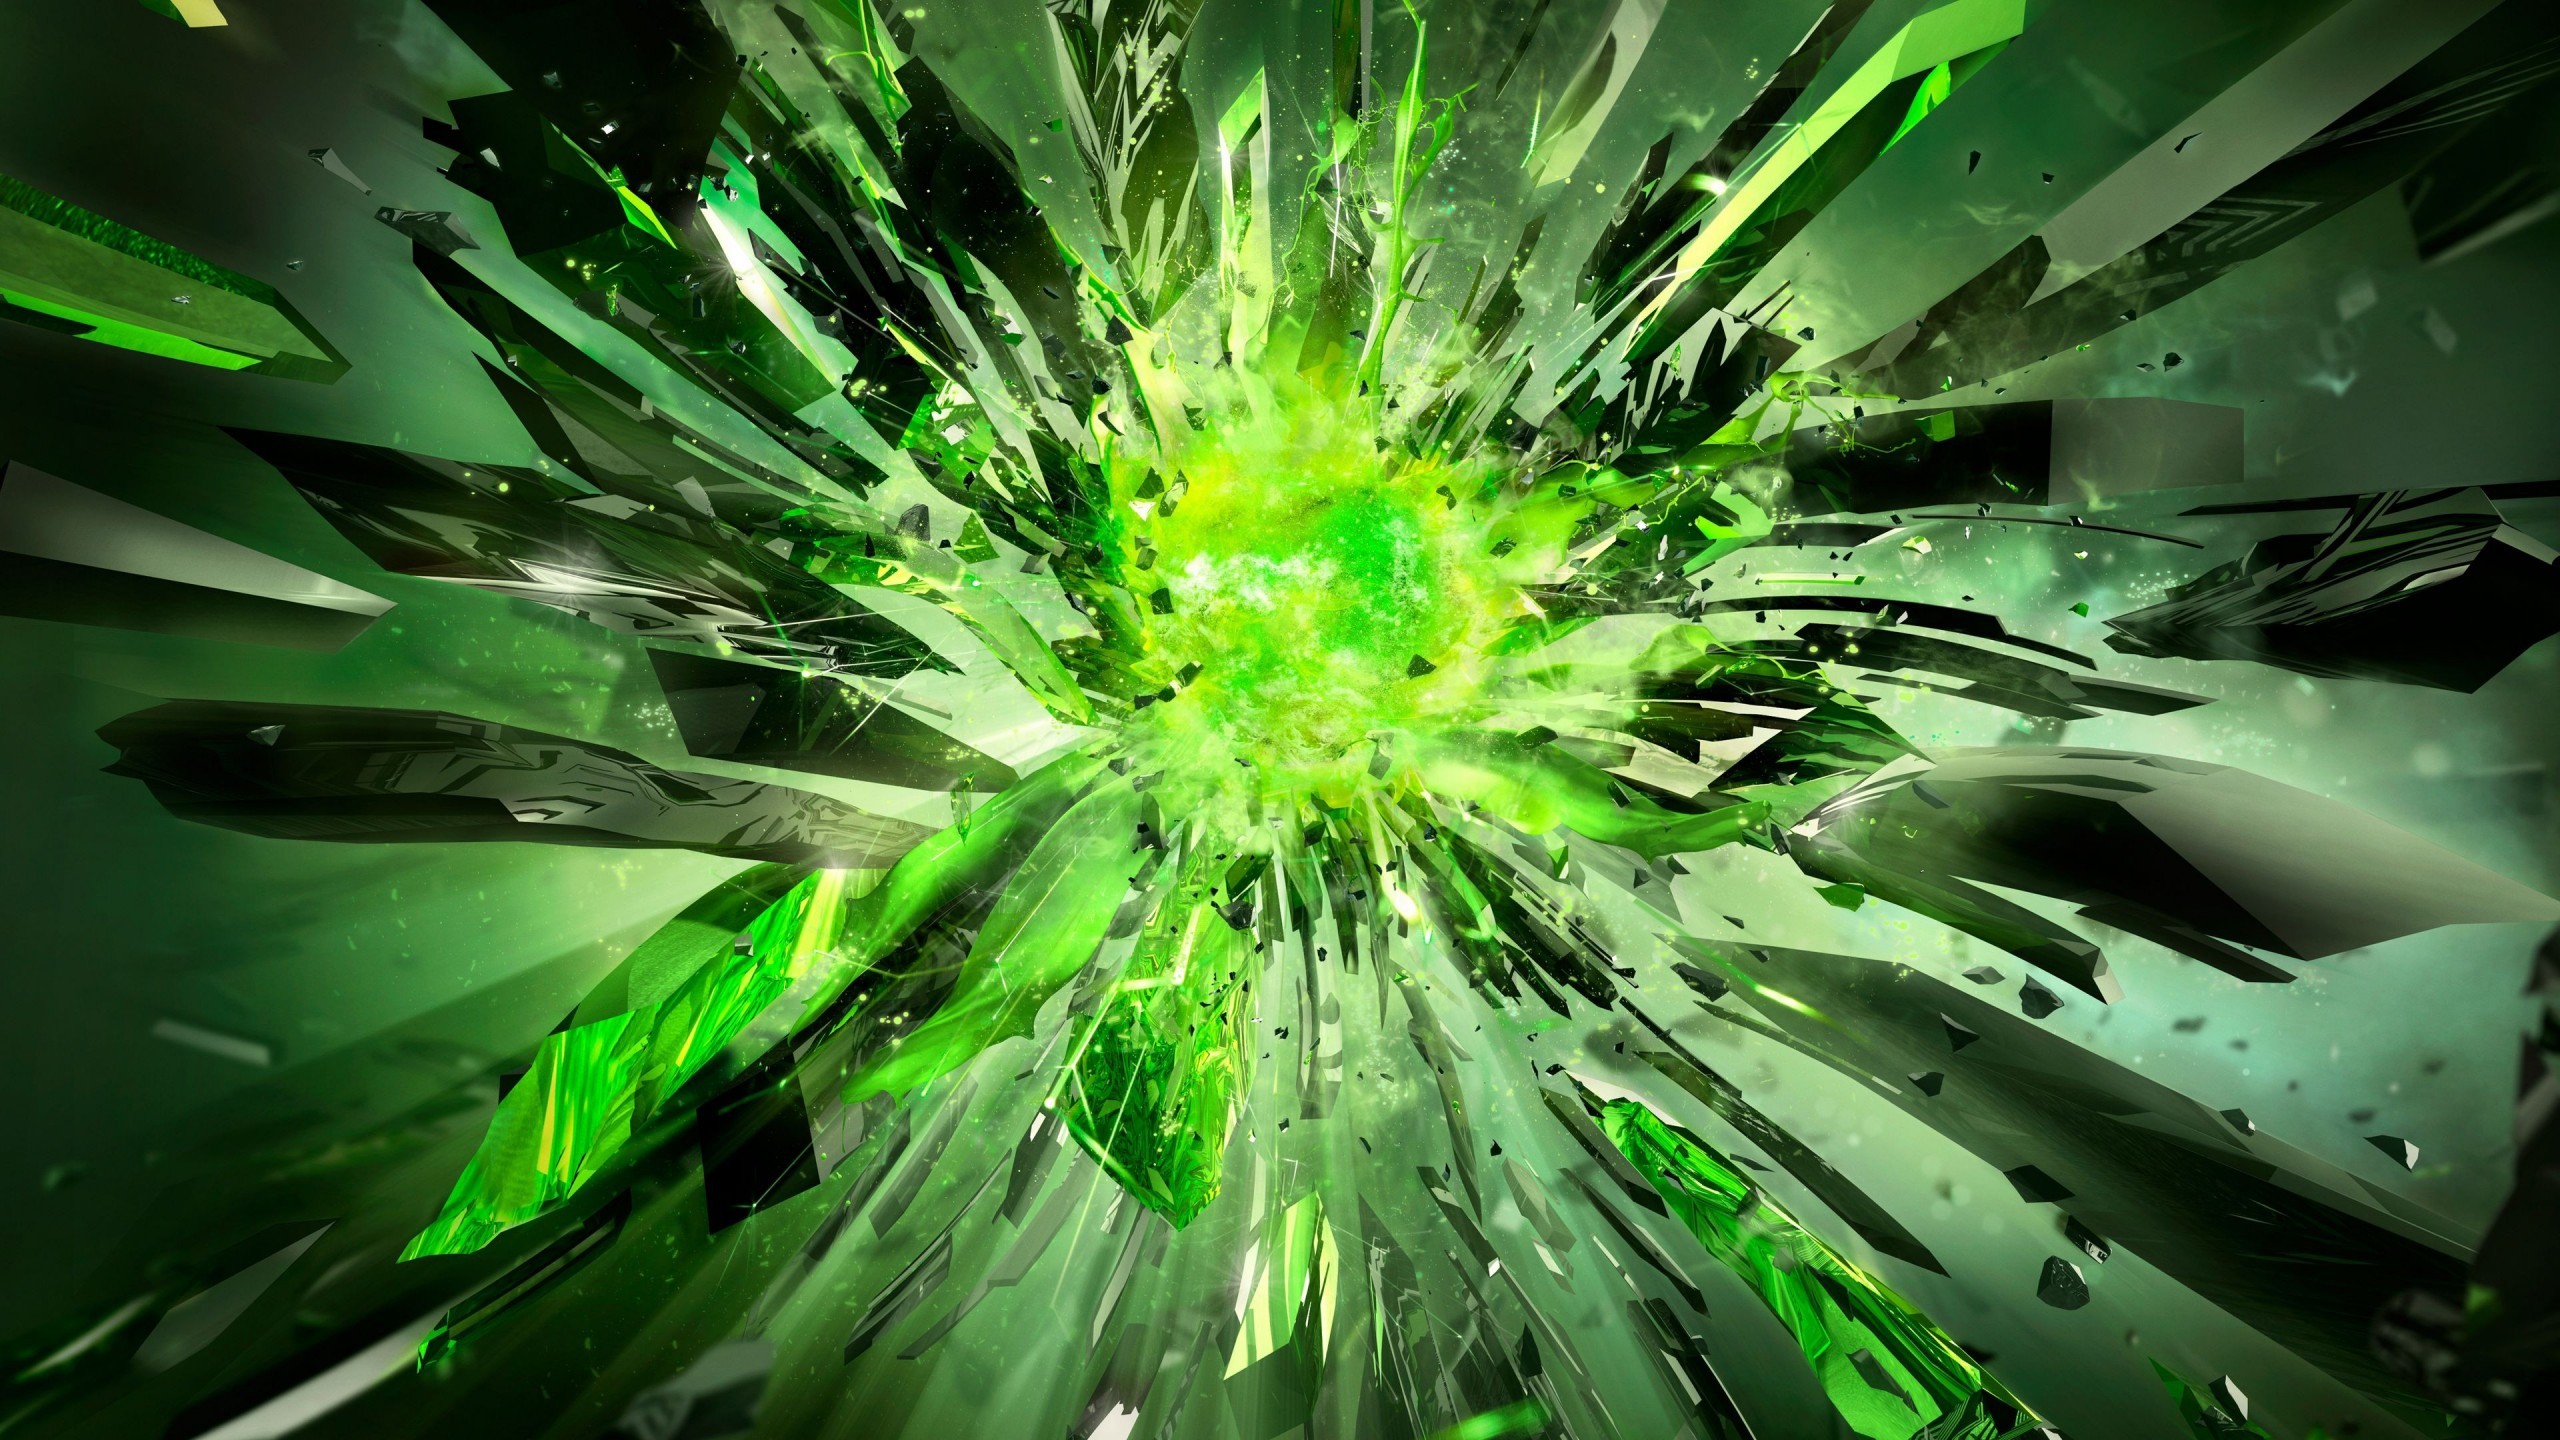 Hãy để hình nền phát nổ hạt nhân màu xanh lá cây này khiến bạn phát cuồng với chiếc điện thoại của mình! Tuyệt vời hơn cả nó còn làm nổi bật chiếc điện thoại của bạn hơn bao giờ hết. Hãy tải và cảm nhận nhé!